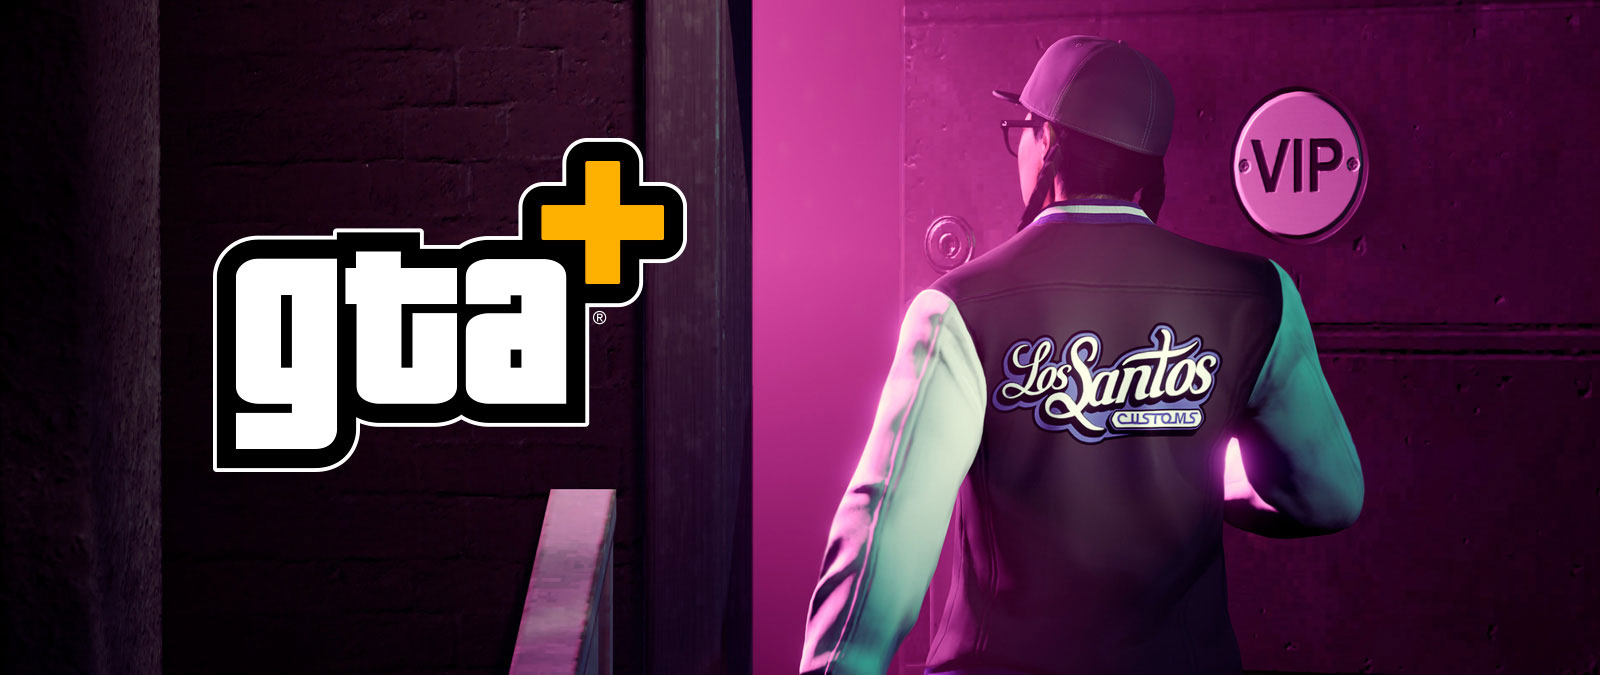 Логотип GTA+, персонаж, одетый в куртку Los Santos Customs, входит в VIP-комнату